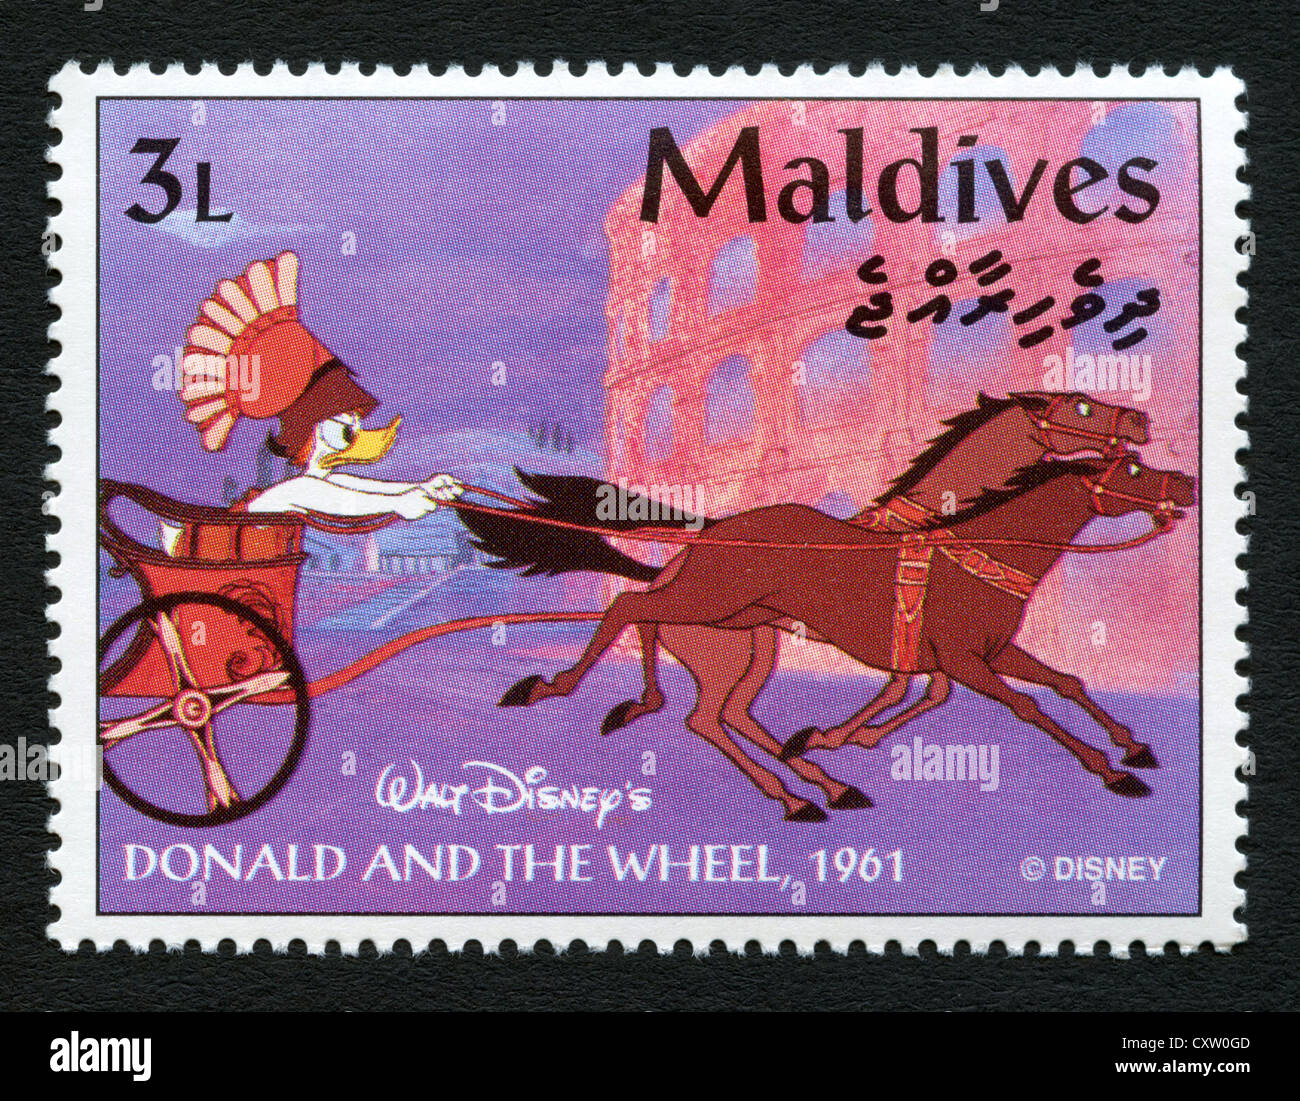 Maldives - Timbres-poste de personnages de dessins animés Disney Banque D'Images